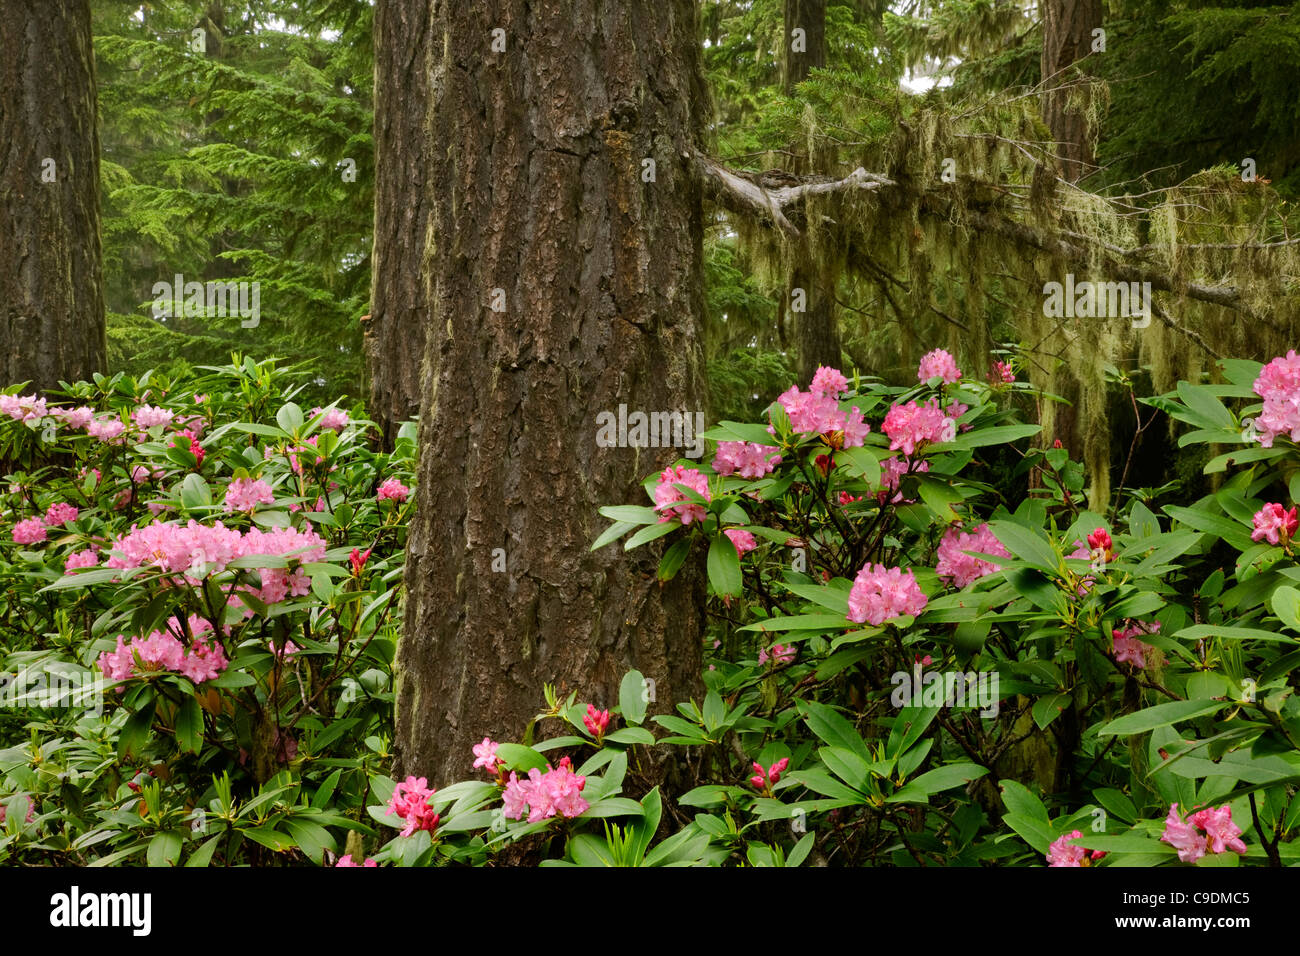 WASHINGTON - Einheimische Rhododendren blühen in den Wäldern der Olympic Peninsula. Stockfoto